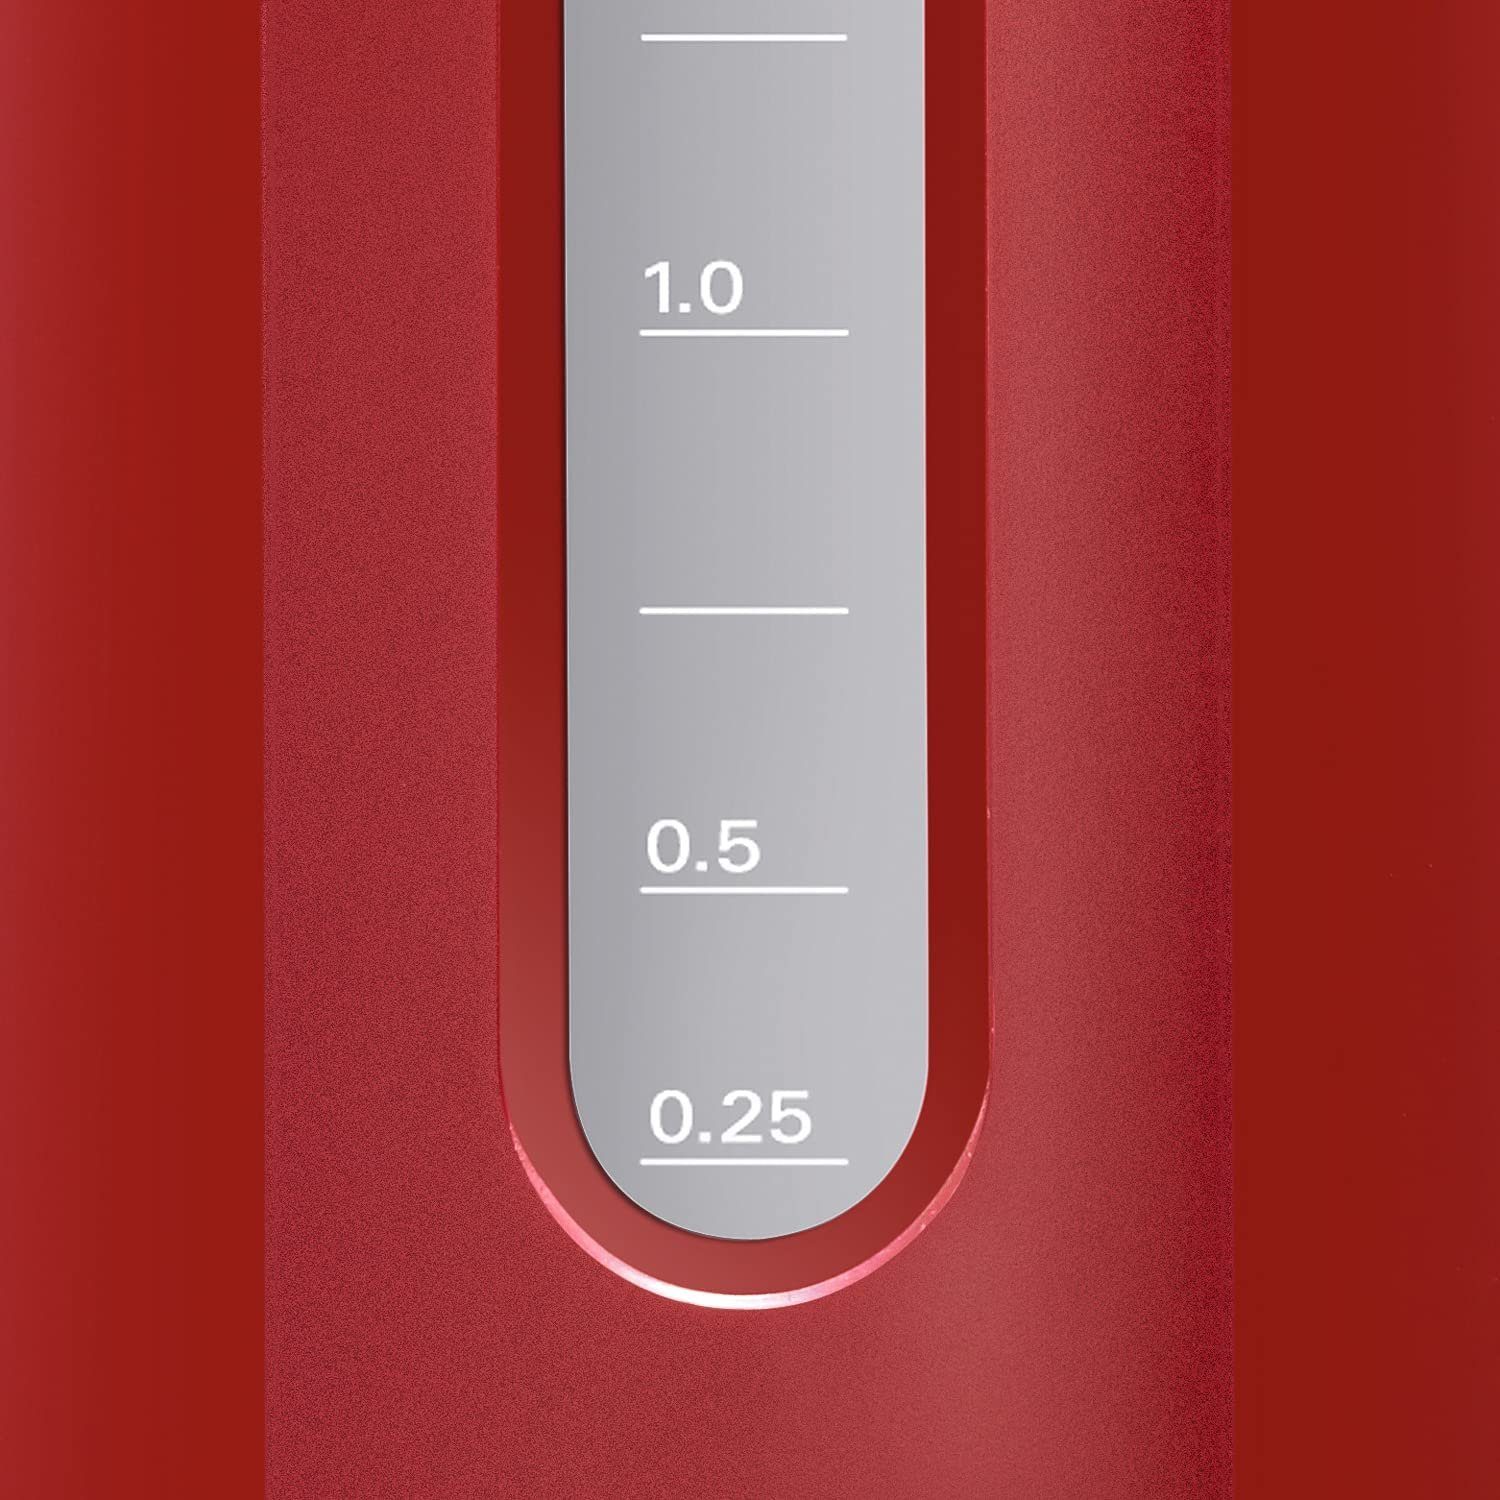 2400 Wasserkocher kabelloser Wasserstandsanzeige W CompactClass, BOSCH Rot Wasserkocher